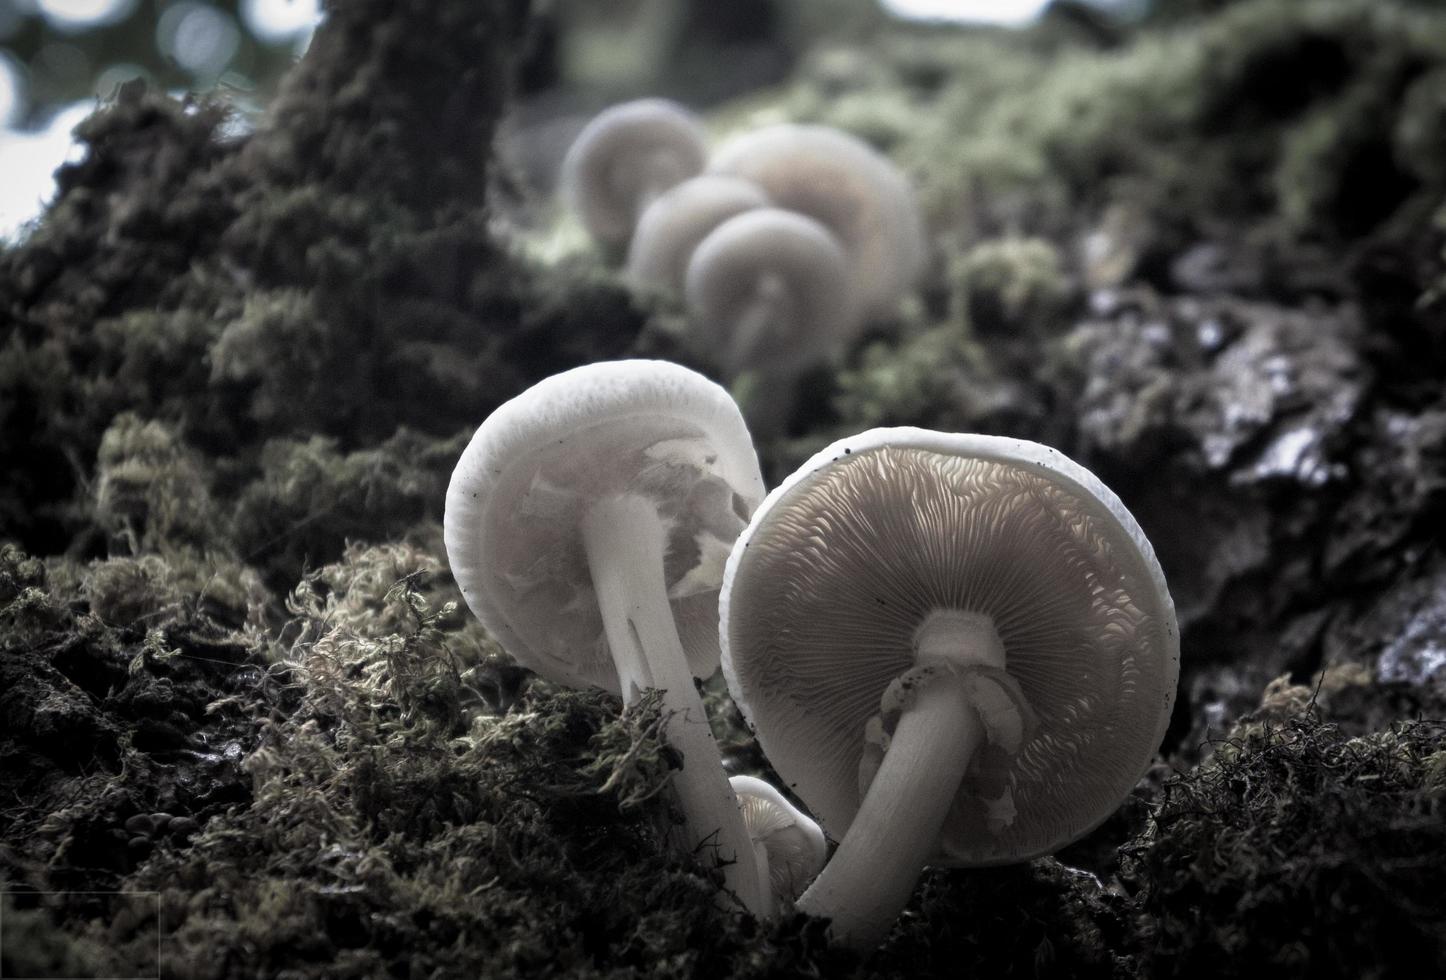 fond naturel avec des champignons poussant sur de la mousse photo